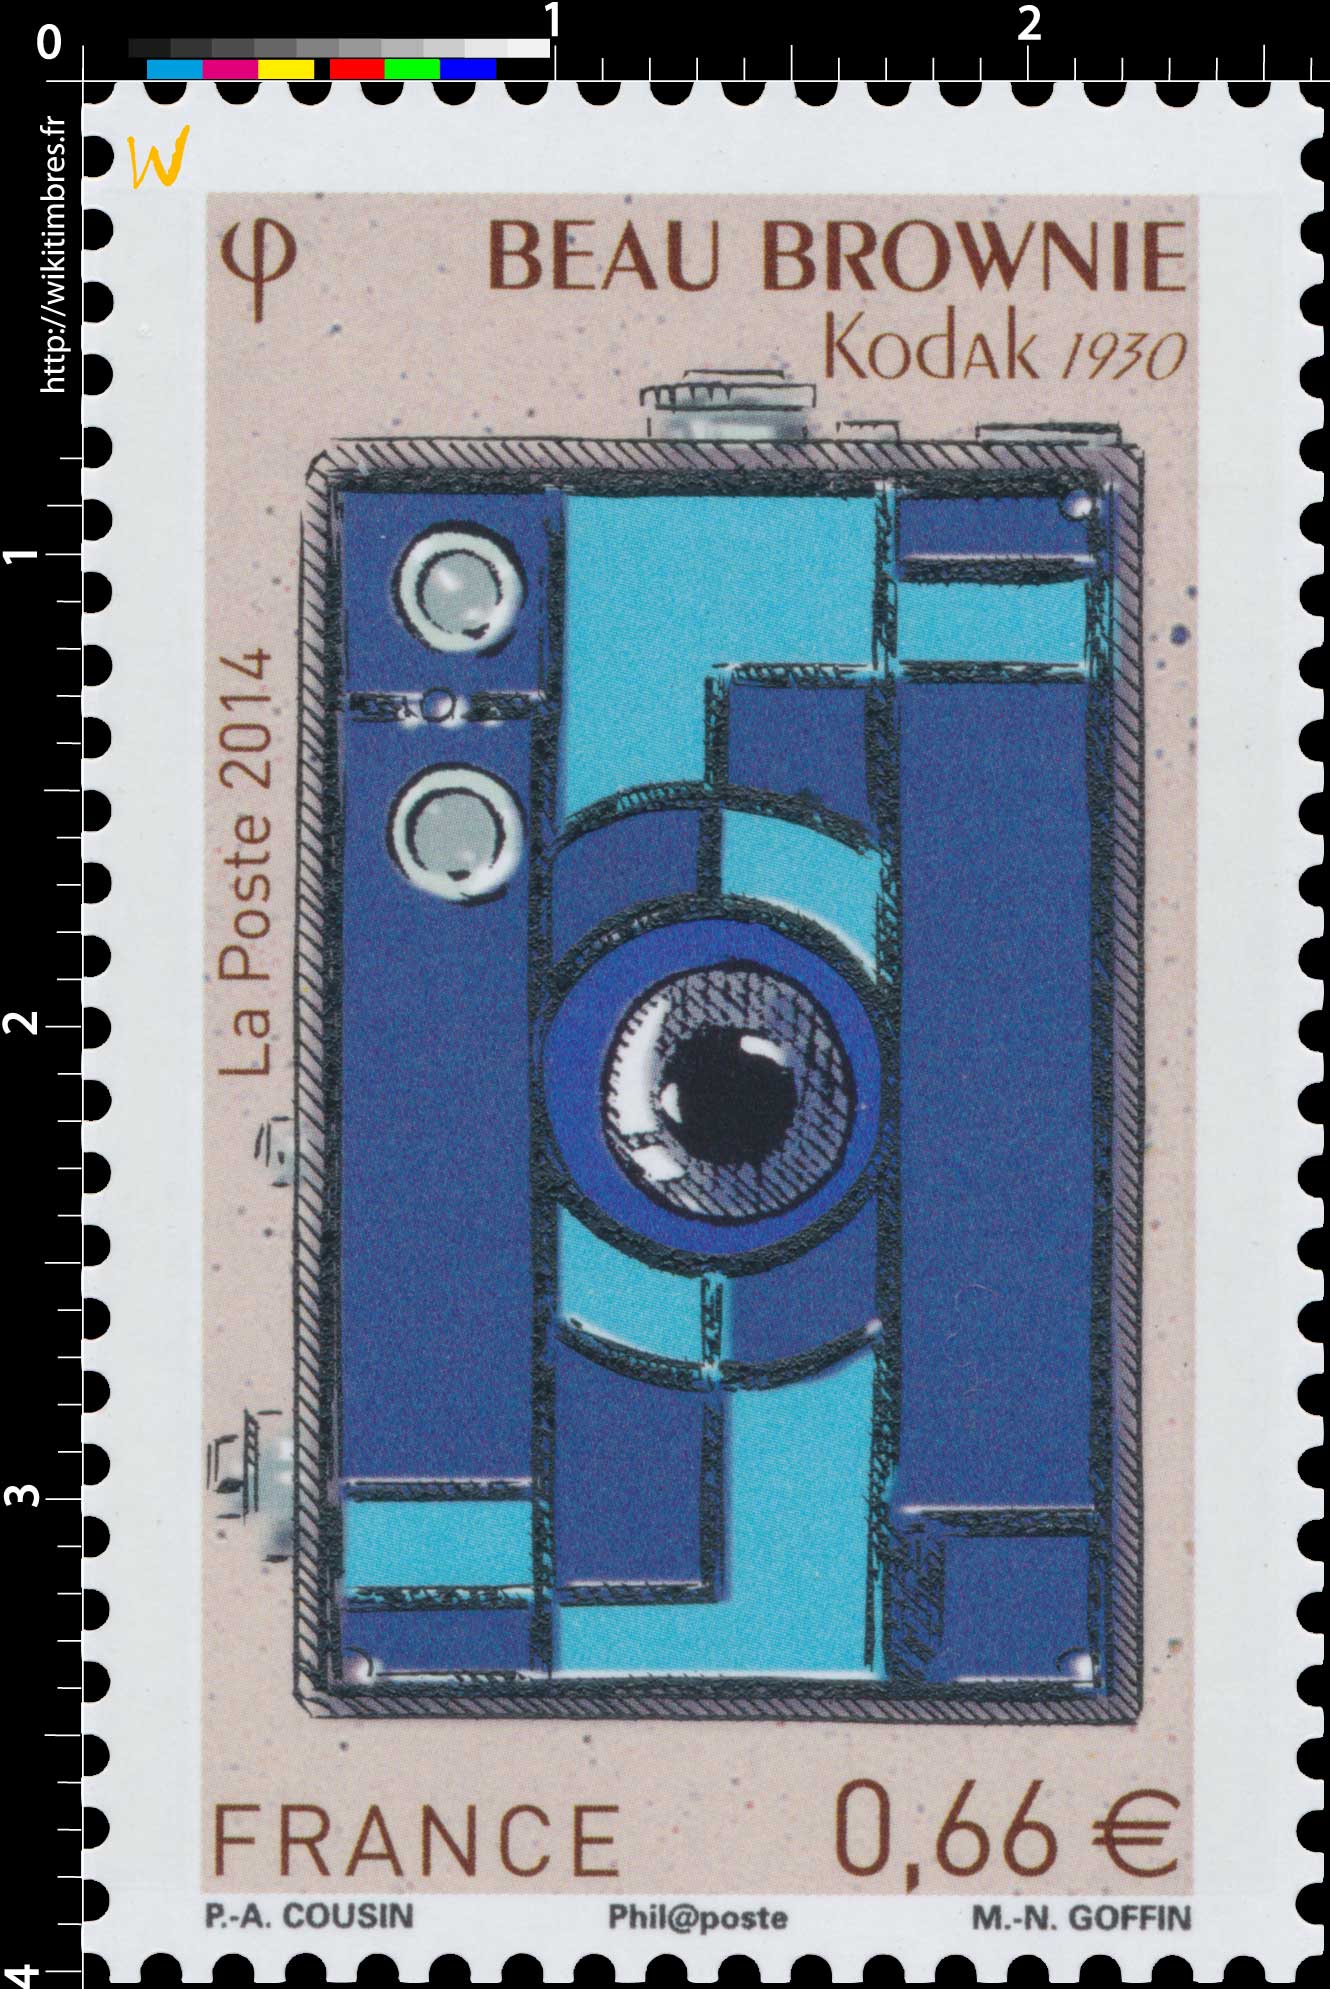 2014 BEAU BROWNIE Kodak 1930